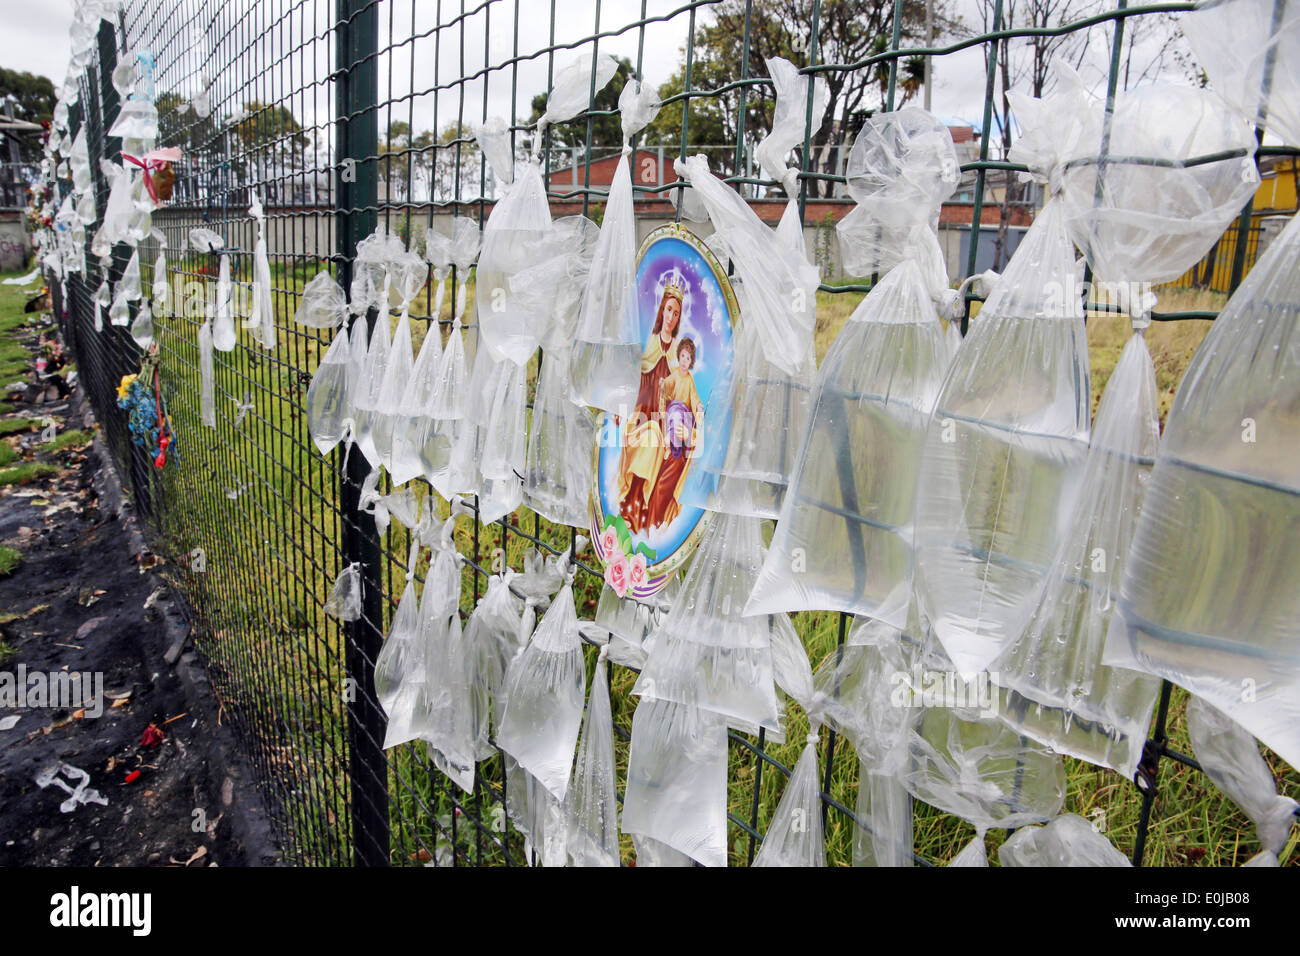 Tansparent sacchetti di plastica con acqua in un recinto del cimitero di anonimi defunti. Bogotà, Colombia, Sud America Foto Stock